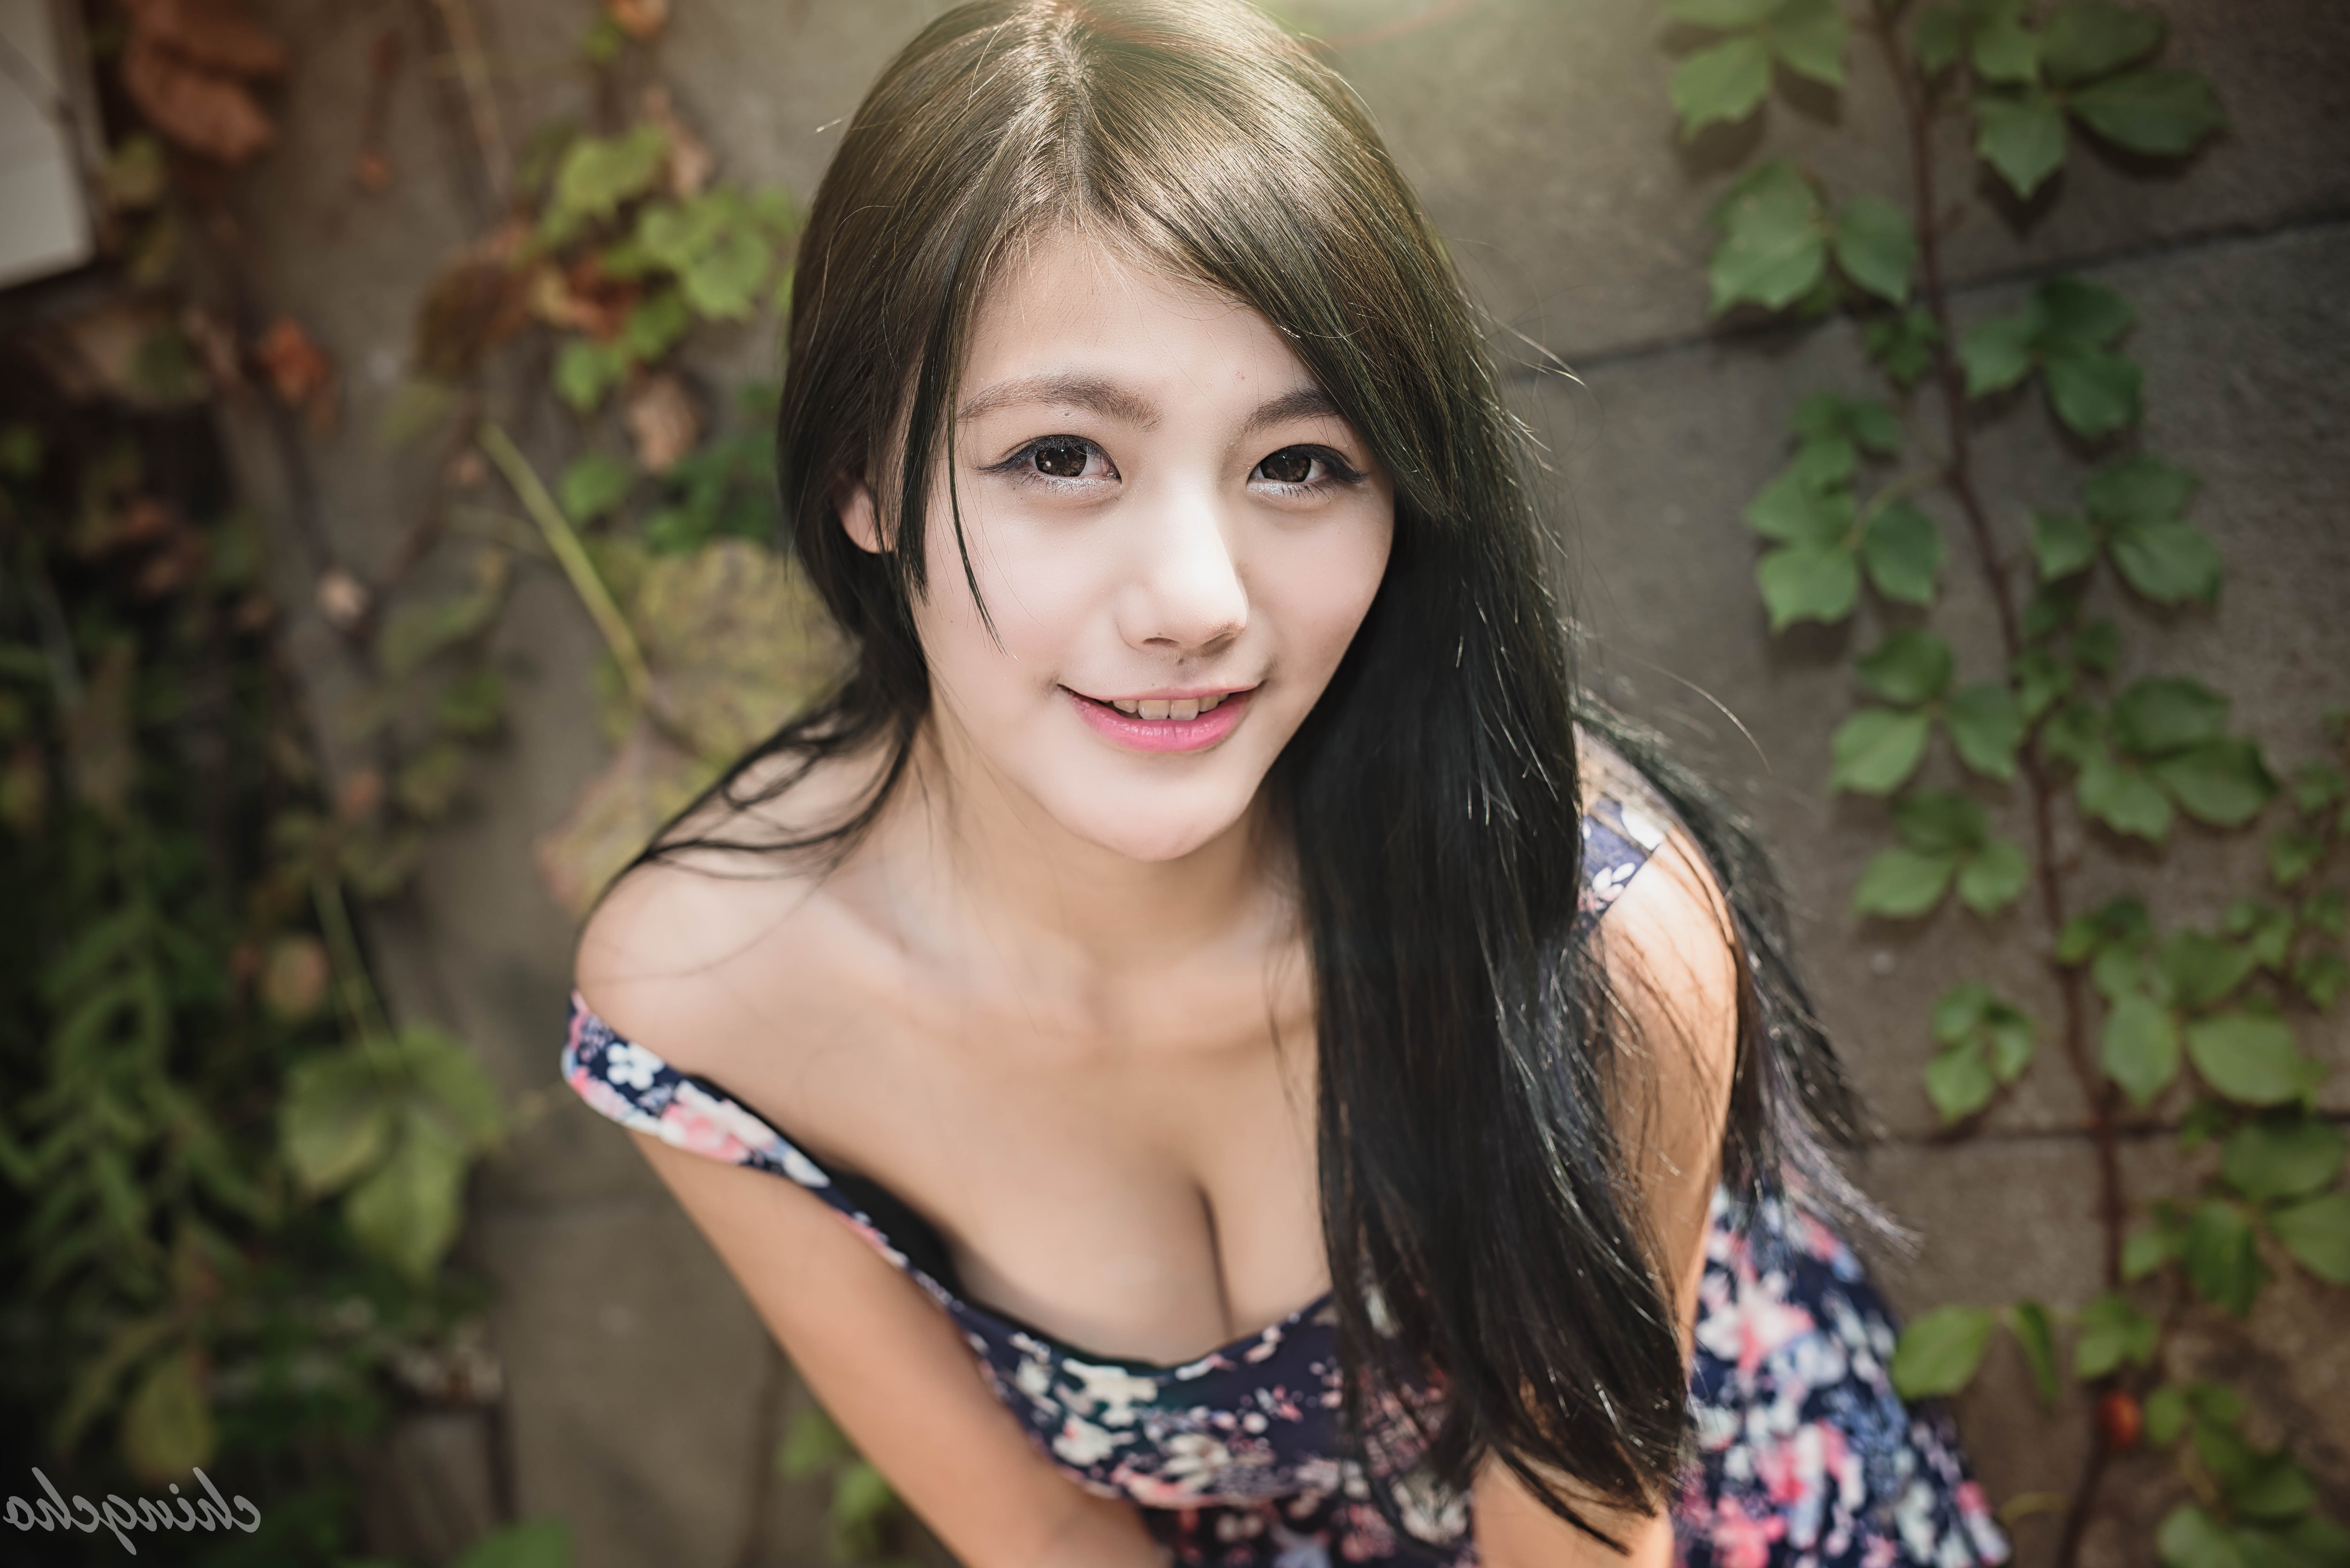 Beautiful Makeup | Asian makeup, Asian eye makeup, Asian eyes